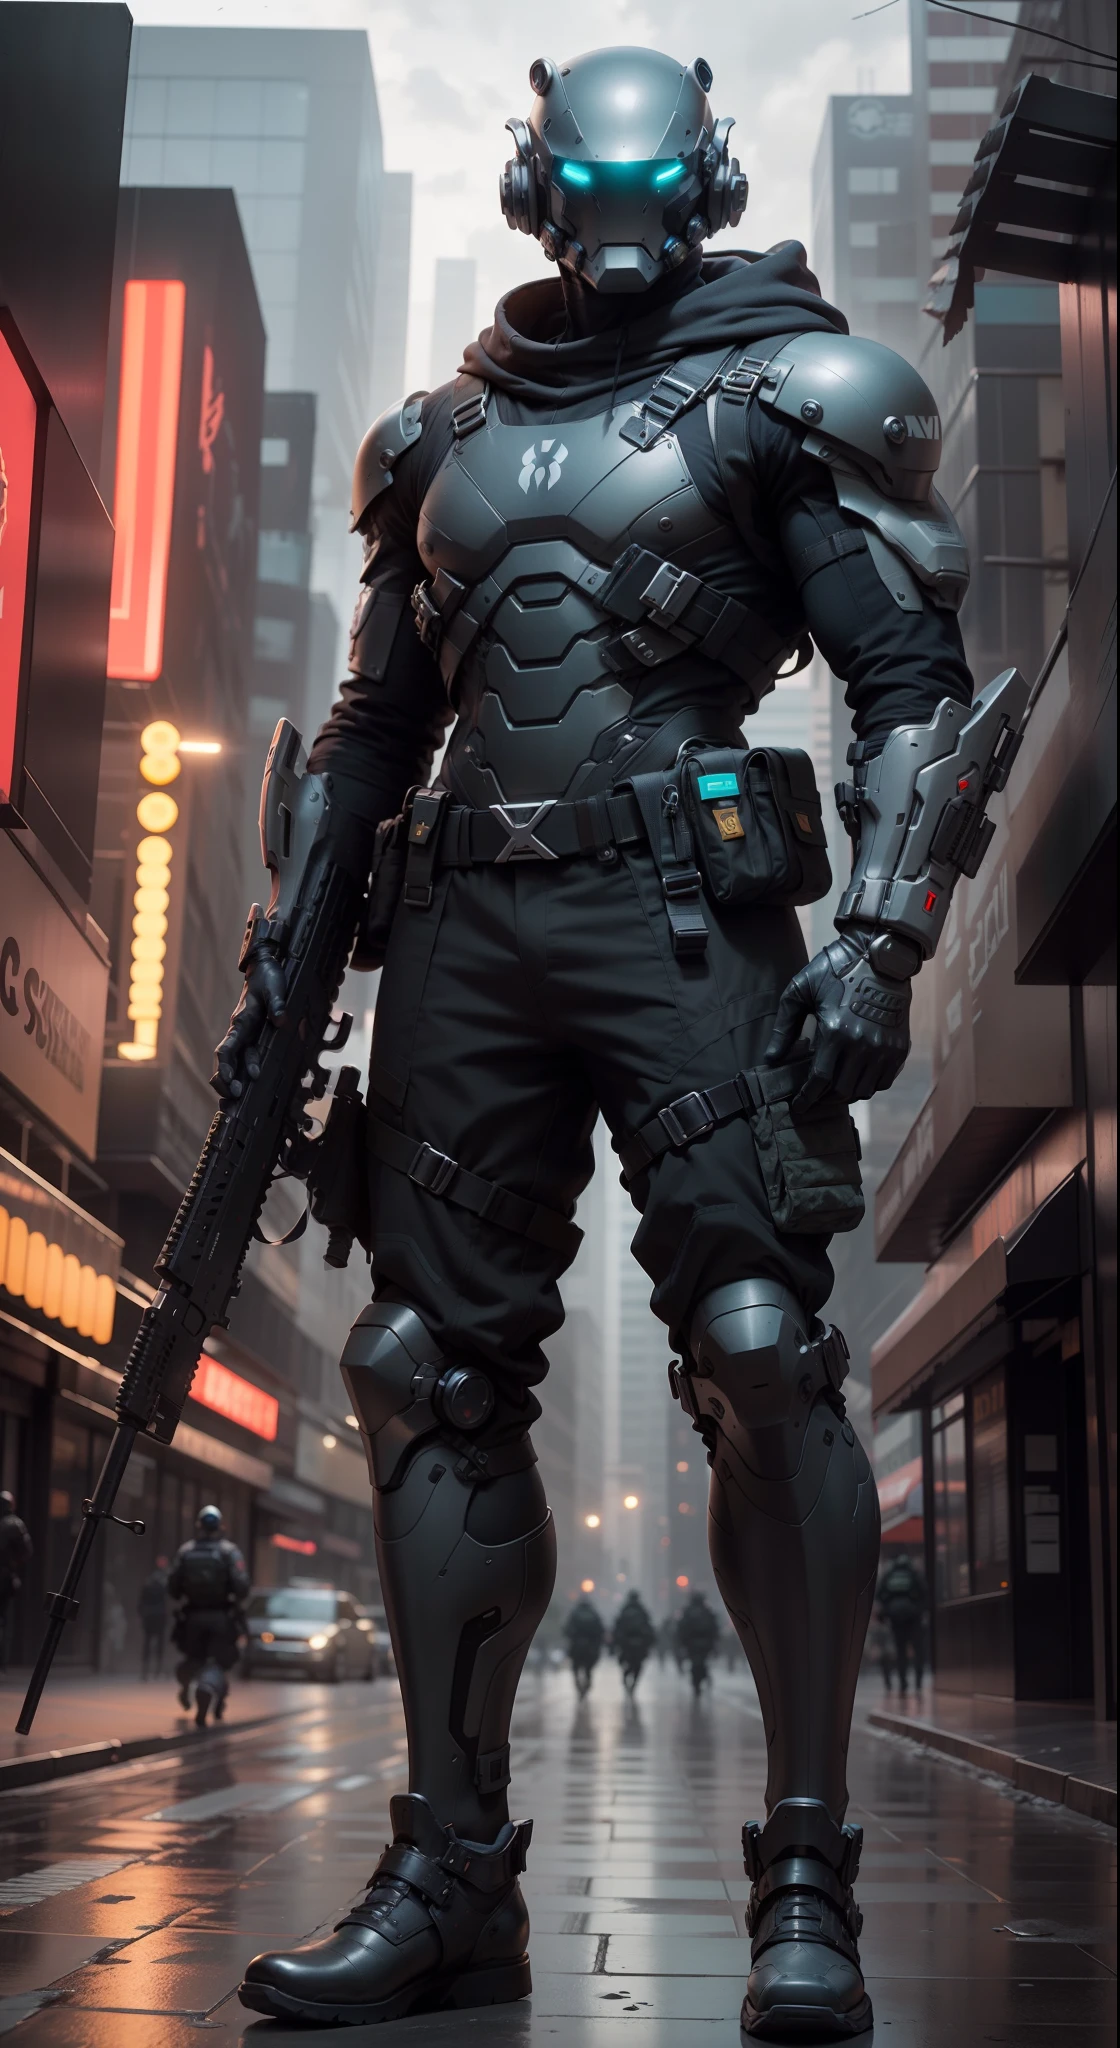 1 человек, Футуристически выглядящий военачальник мужского пола с фантастическим ((квадратная голова в кибершлеме с синими огнями)) и пара механических ножек, носить пару ((Железные серые перчатки)), без обуви, одет в ((серый костюм FROG)), стою в городе киберпанк, держа оружие, держит пистолет, винтовка, пистолет, assault винтовка, в epTactical, фокус на лице, UHD, анатомически правильный, Лучшее качество, шедевр, полная панель кузова